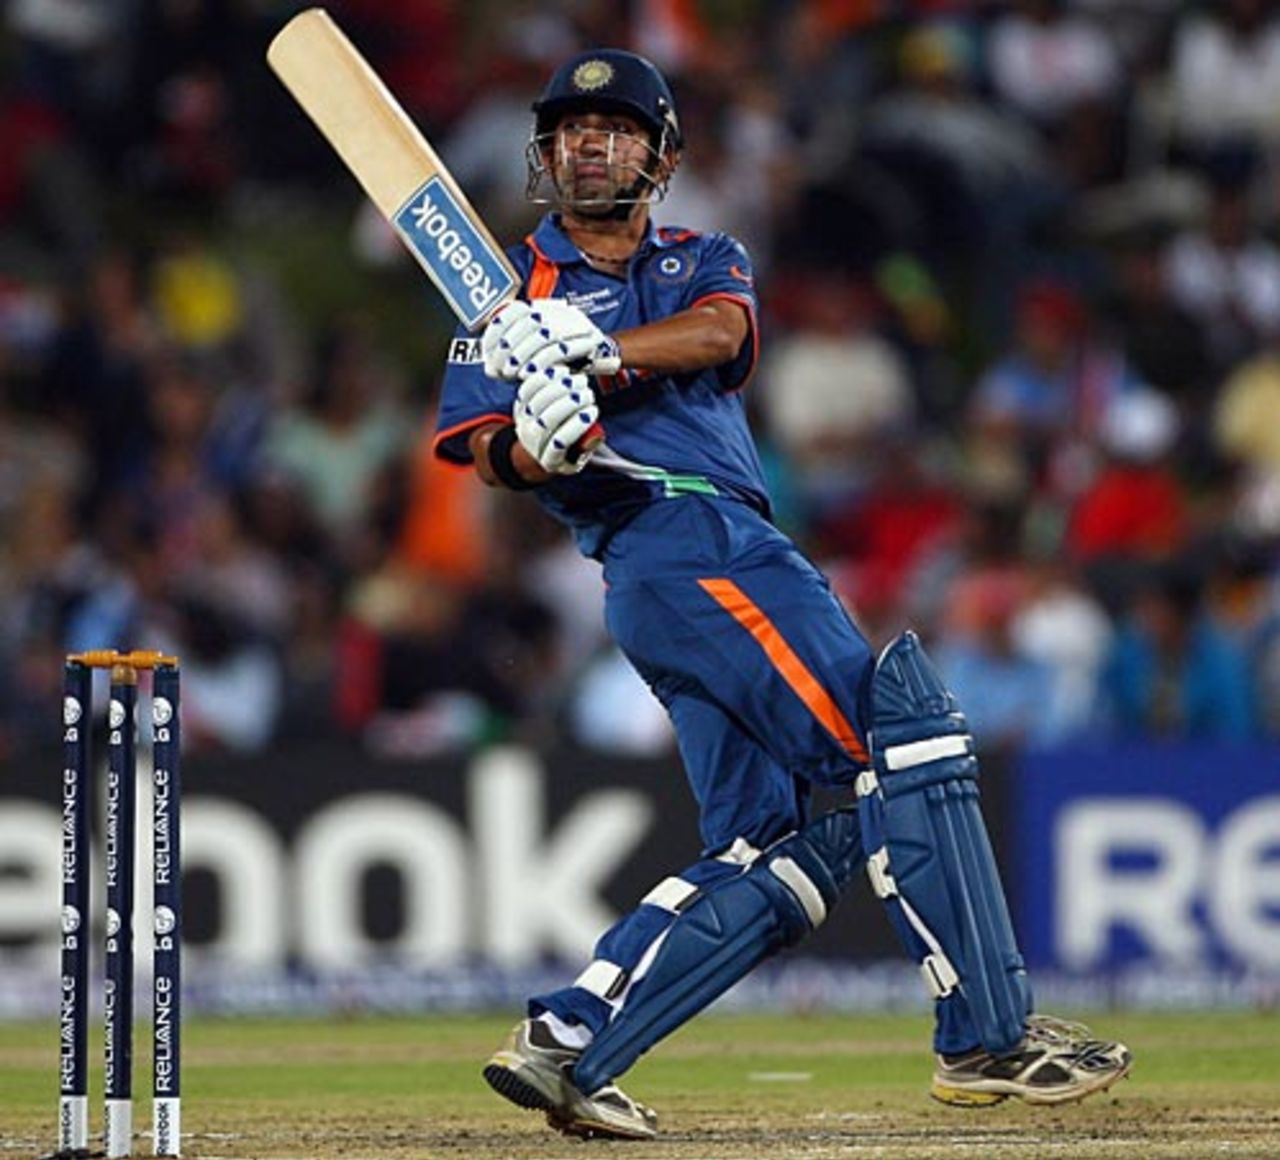 Gautam Gambhir scored 57 off 46 balls, India v Pakistan, Champions Trophy, Group A, Centurion, September 26, 2009